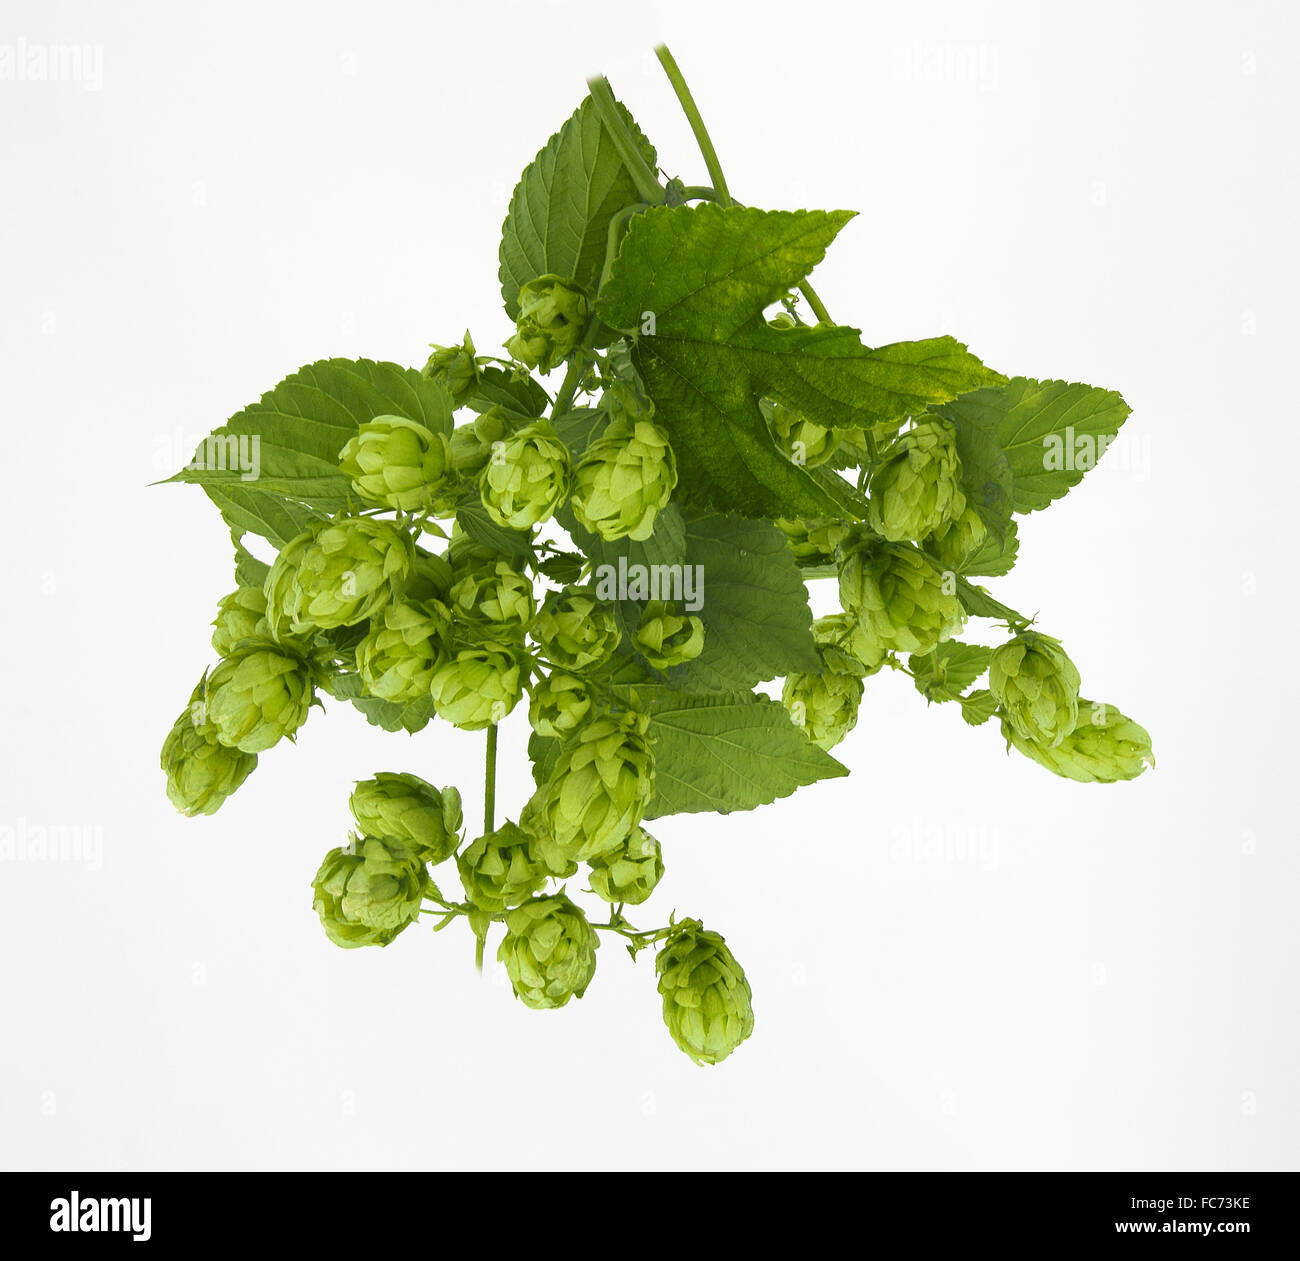 Salto verde con inflorescencias femeninas Foto de stock